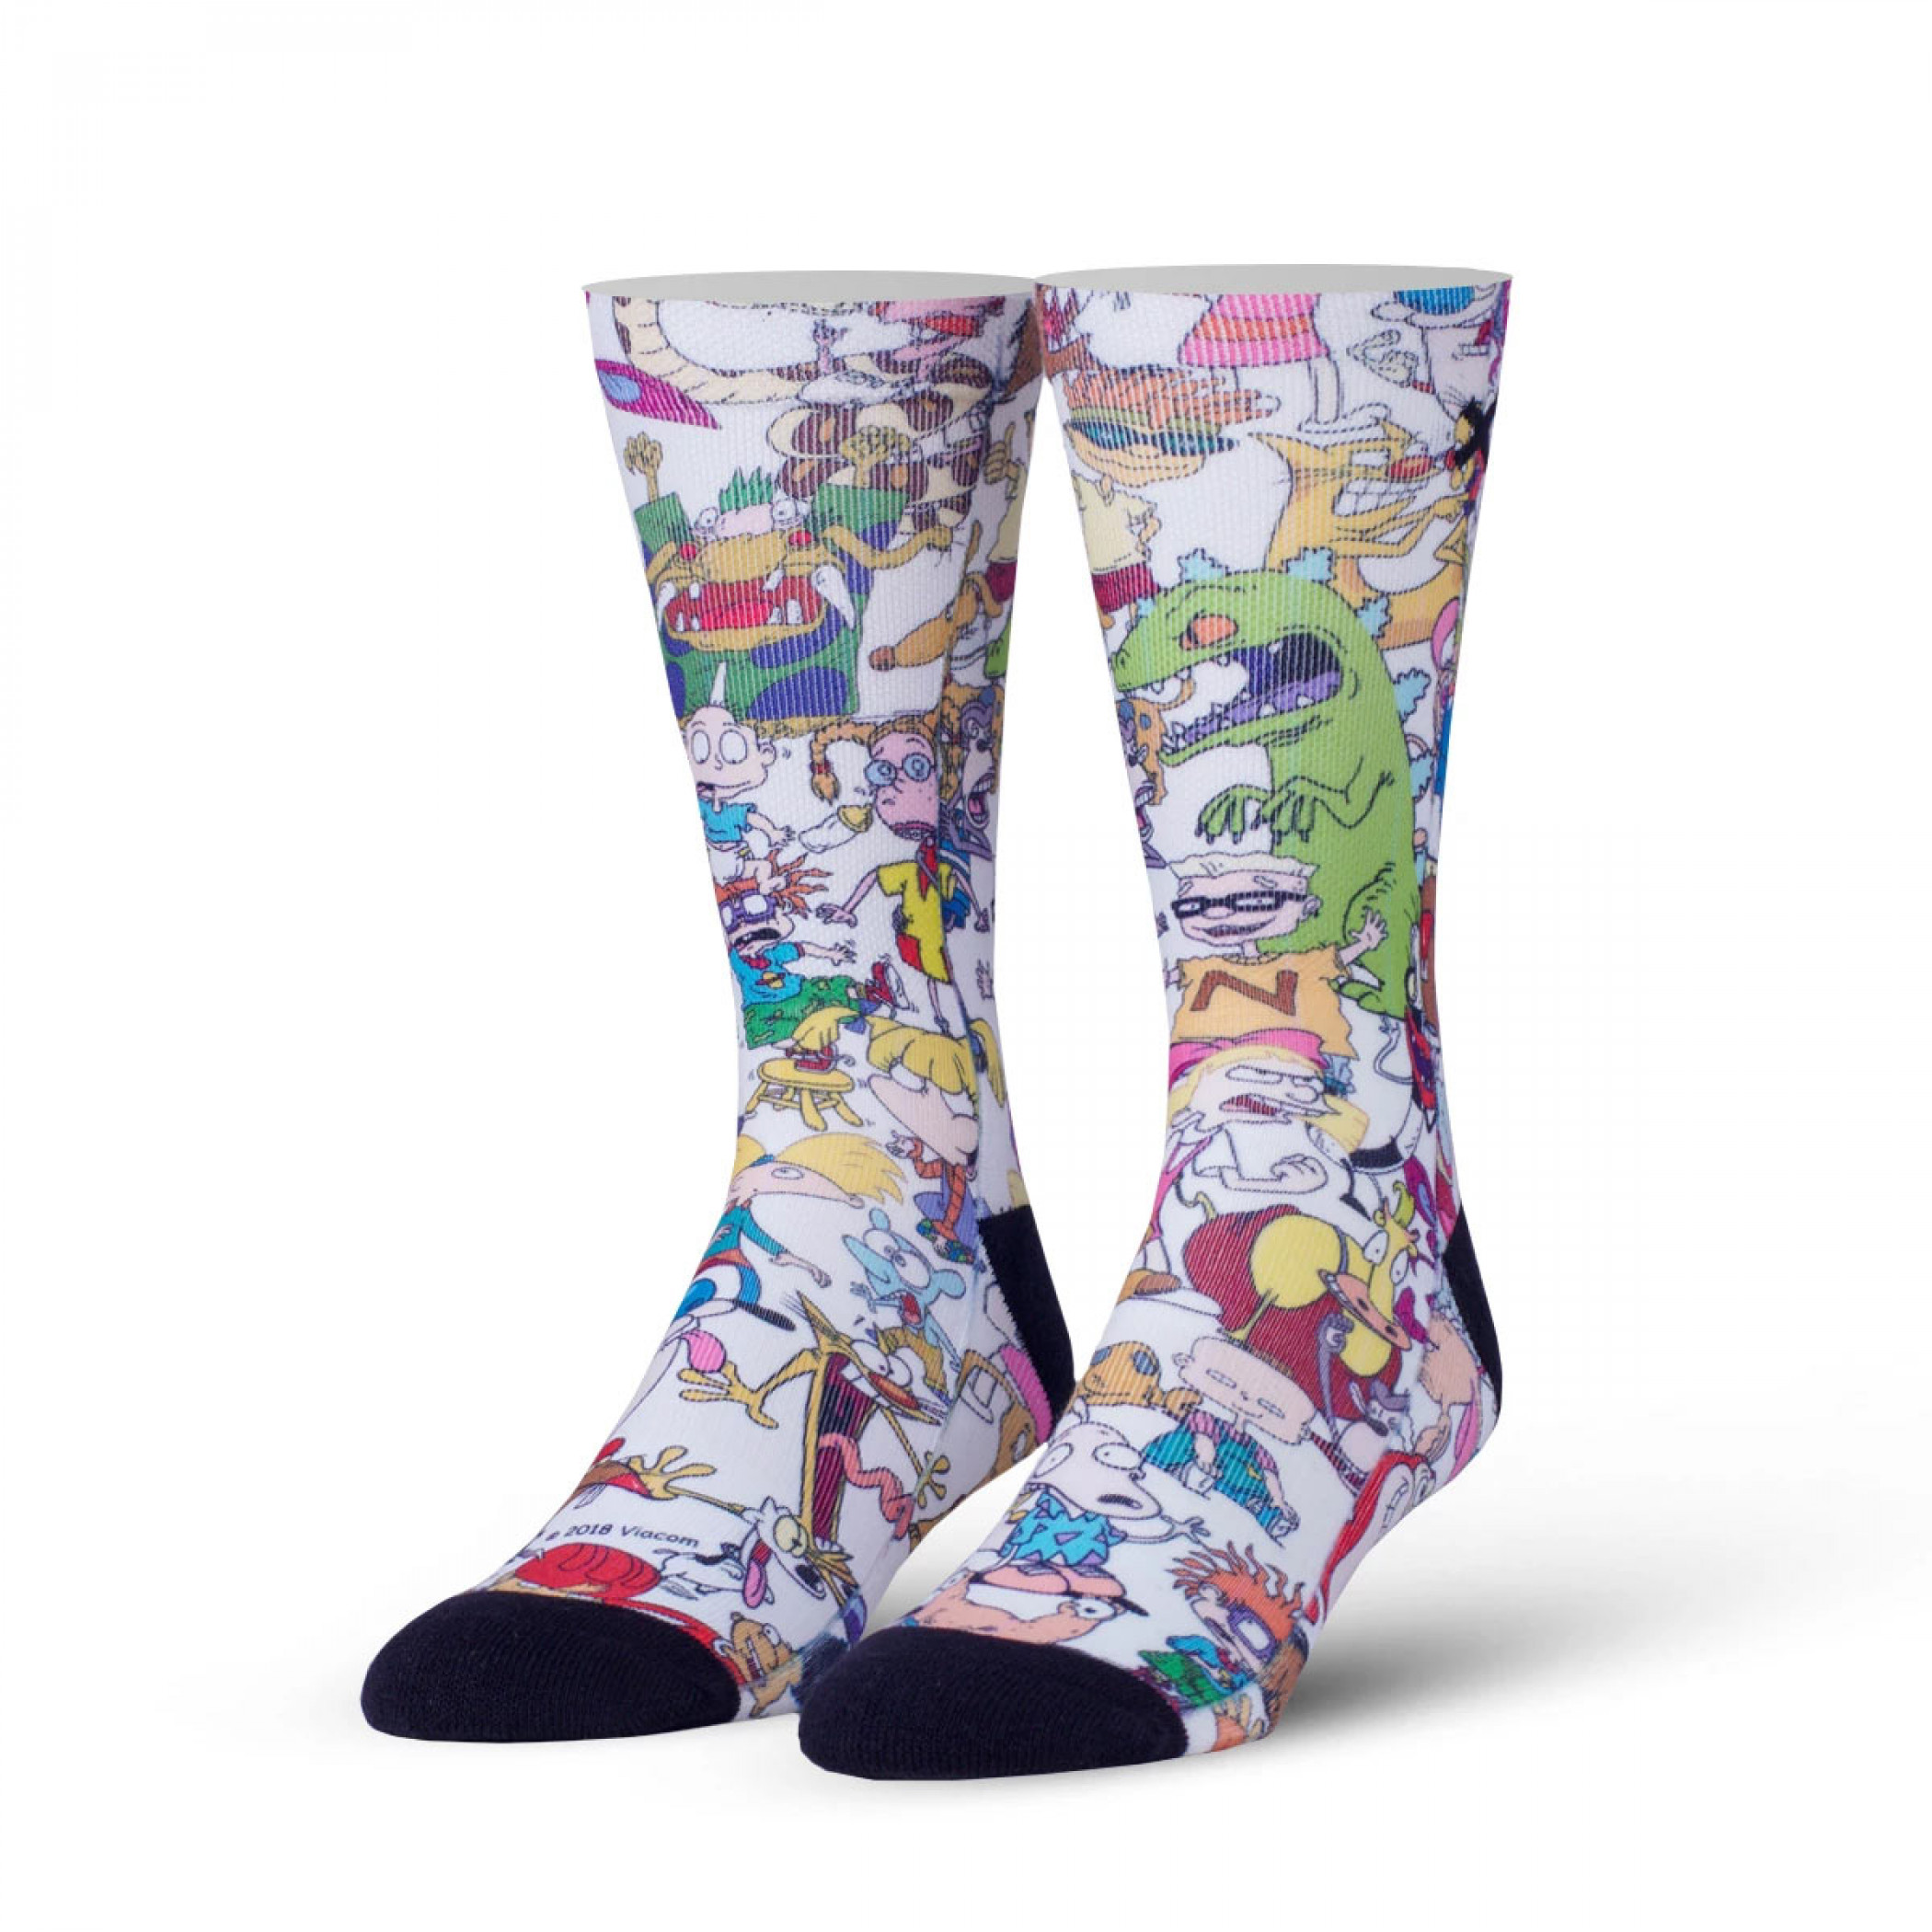 Nicktoons Socks